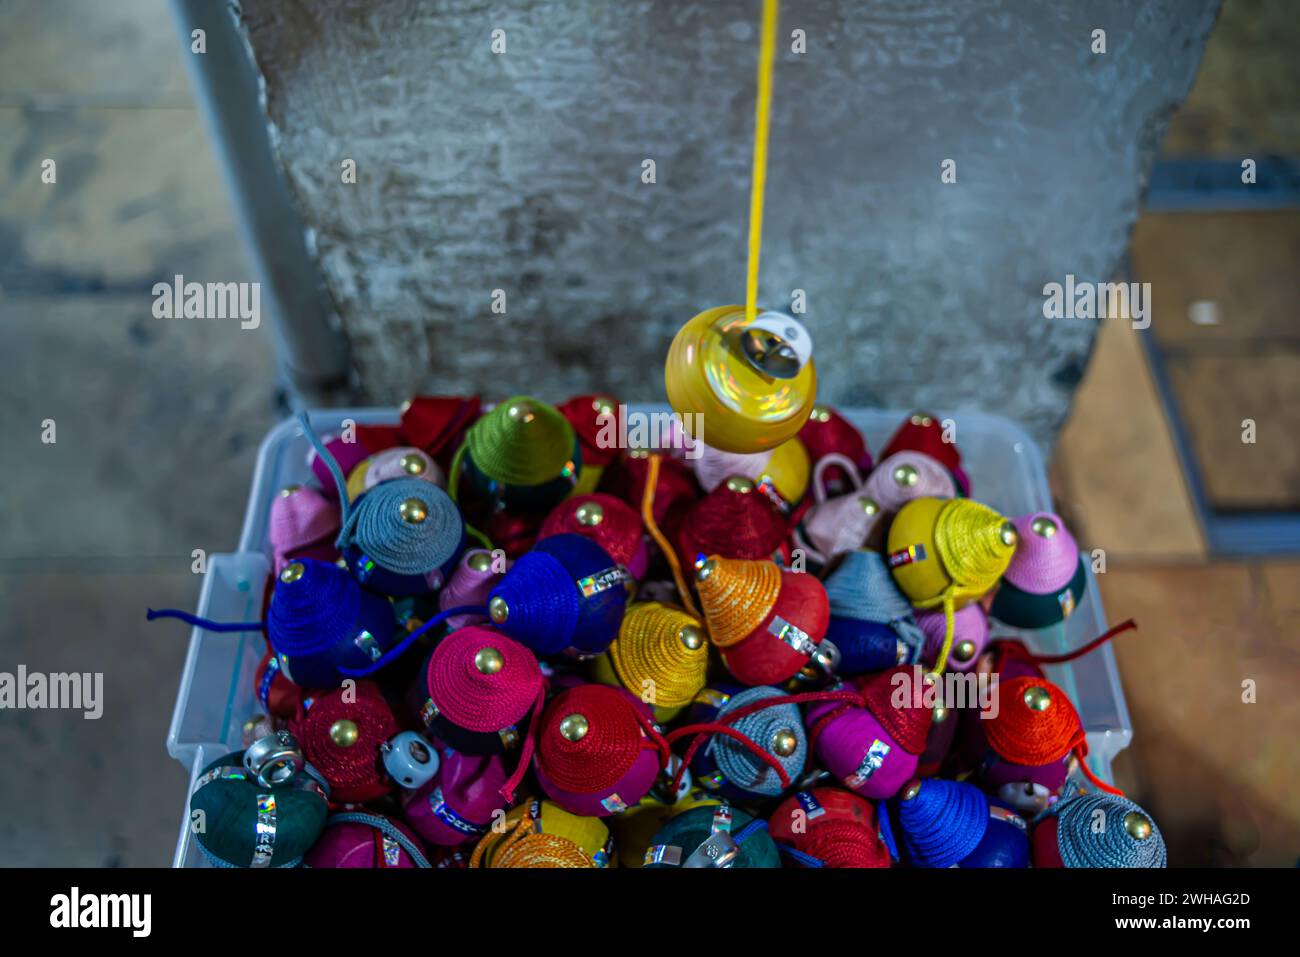 Un vivace spettacolo di giocattoli vorticosi colorati nel bazar, realizzati a mano con fantasia artistica, che aggiunge una vivace giocosità. Foto Stock